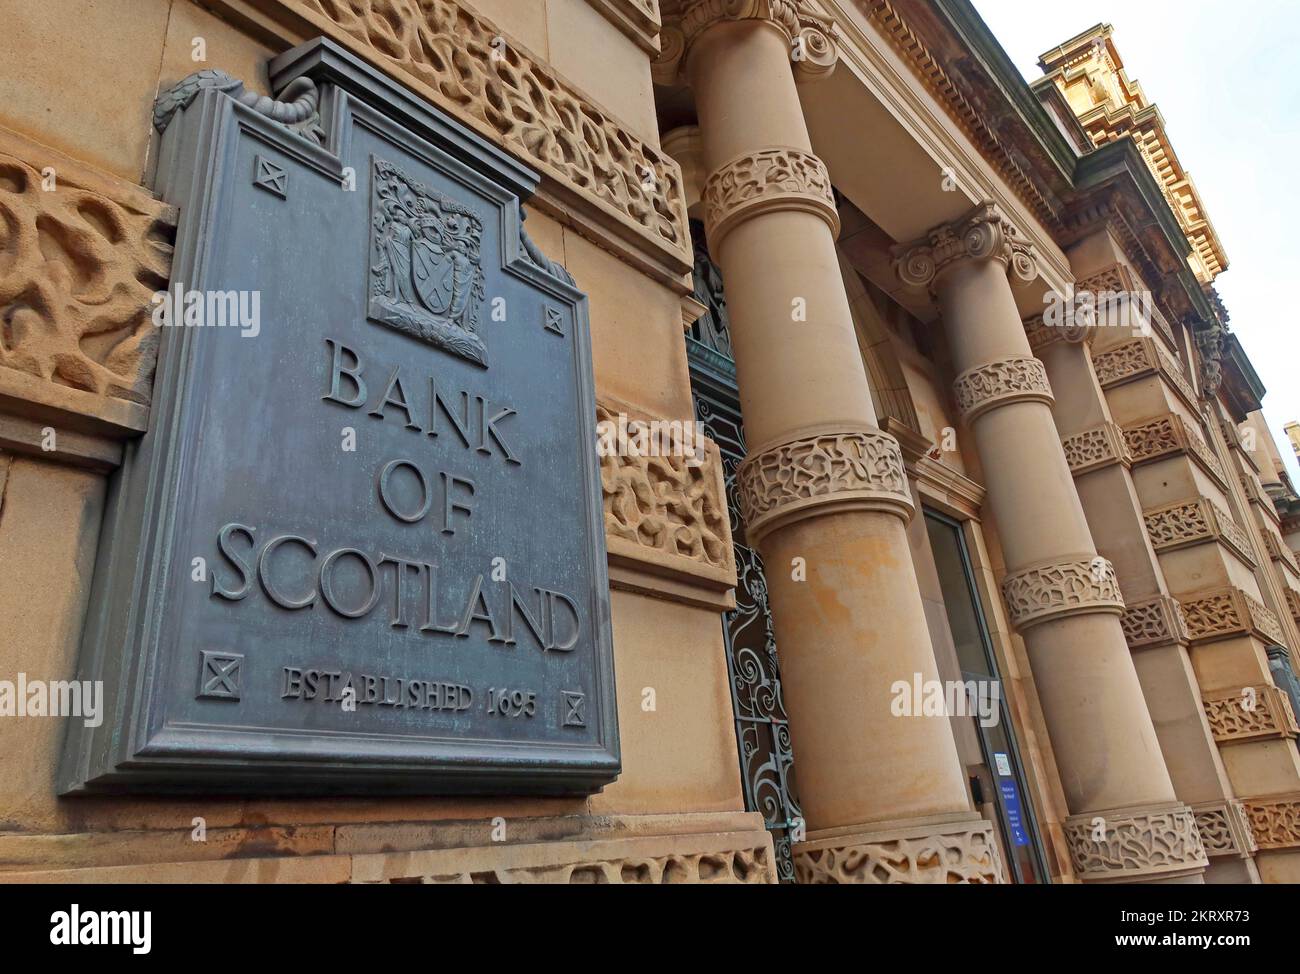 Bank of Scotland, Banca na h-Alba, Hauptsitz 1695, im Stadtzentrum von Mound Edinburgh, Schottland, Großbritannien, EH1 1YZ Stockfoto